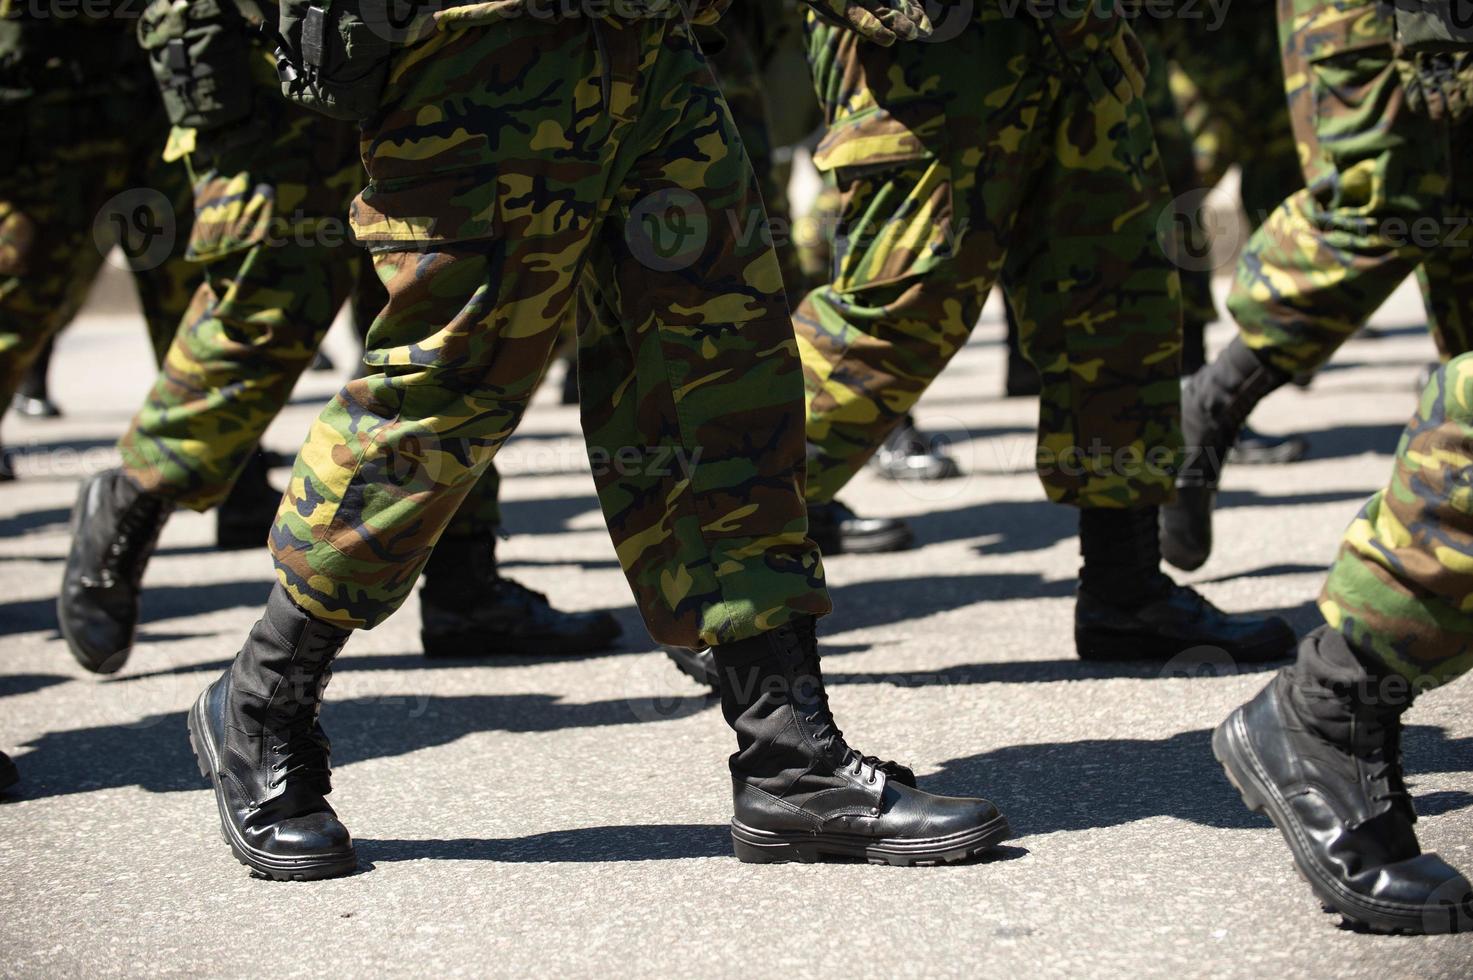 Militär marschiert in einer Straße. Beine und Schuhe in einer Linie foto